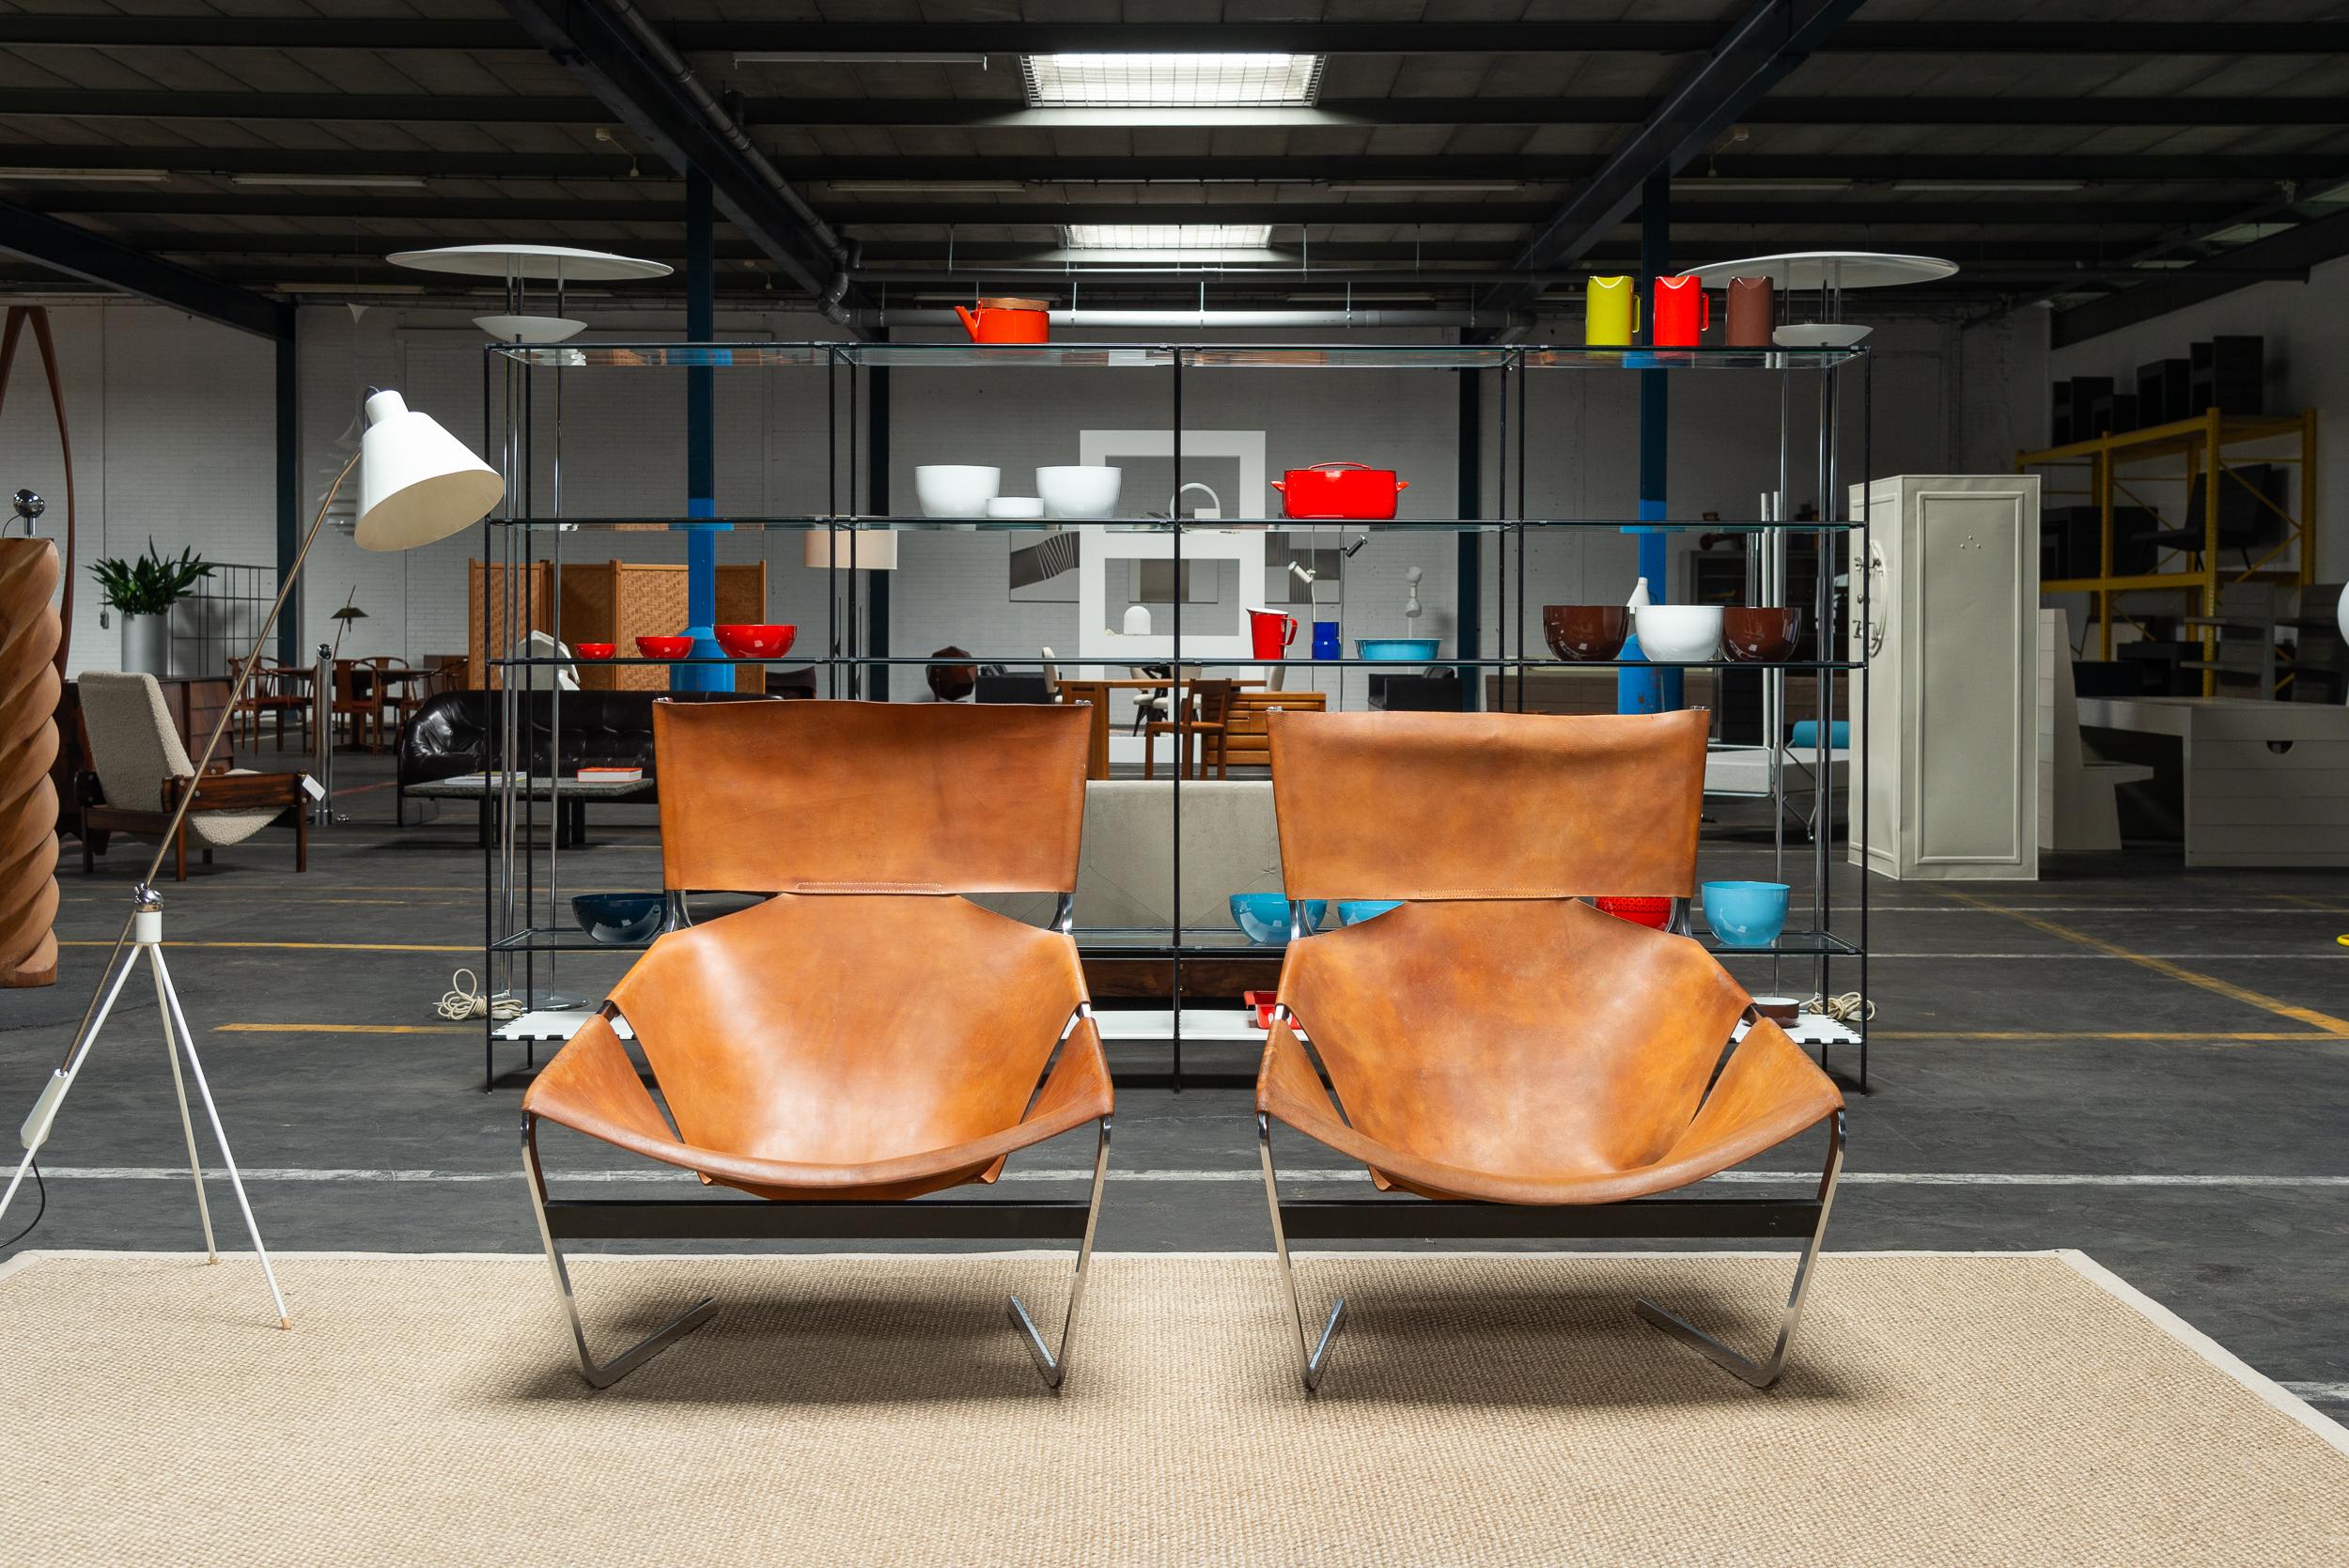 Superbe et originale paire de chaises de salon F444 conçues par Pierre Paulin et fabriquées par Artifort en 1963. Dans les années 1960, lorsque cette chaise a vu le jour, les designers s'efforçaient d'essayer de nouveaux concepts. La chaise longue